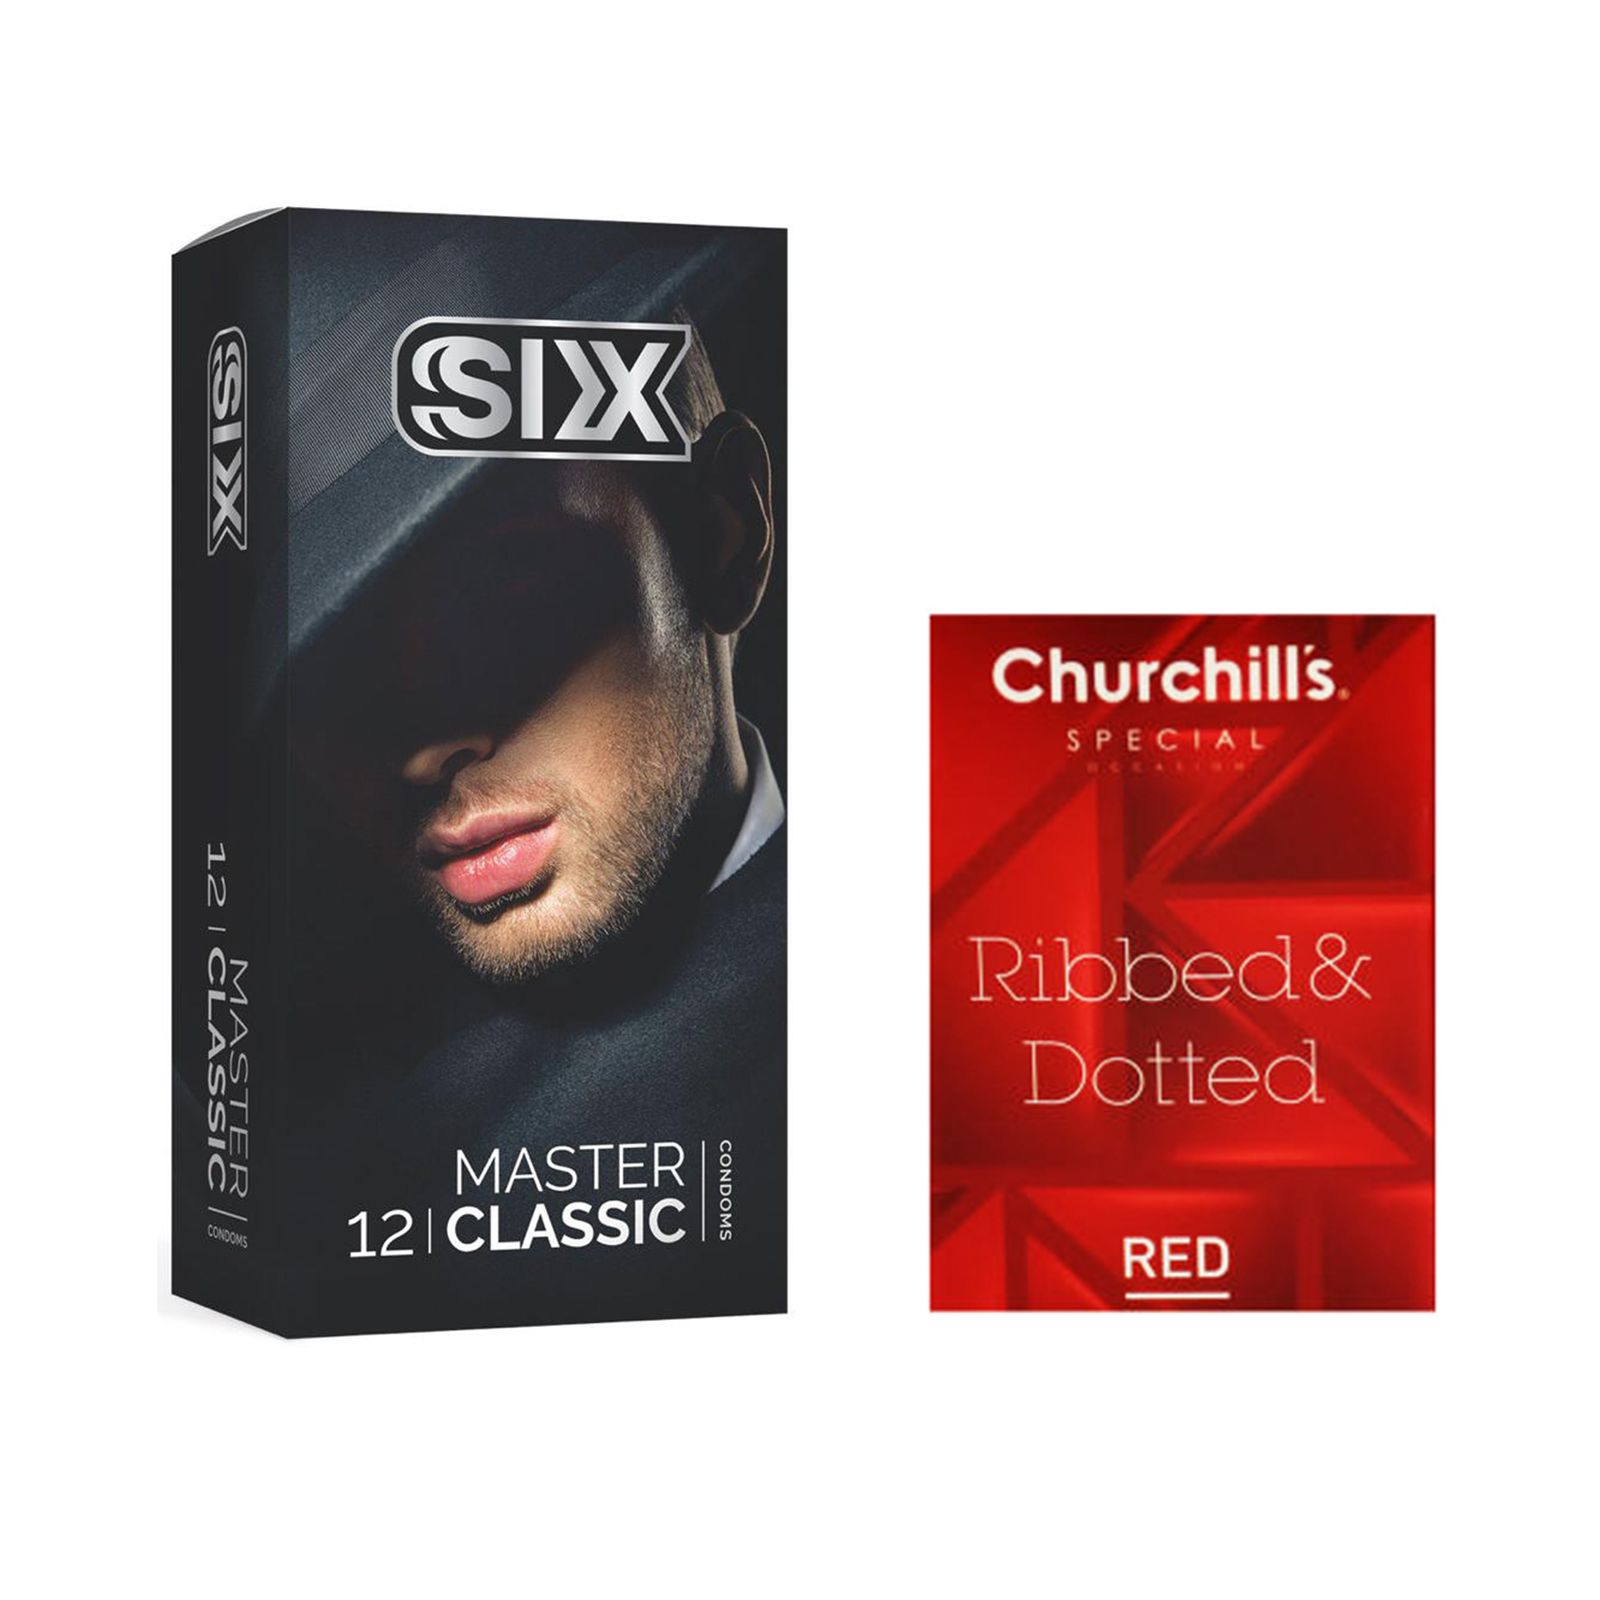 کاندوم سیکس مدل Master Classic بسته 12 عددی به همراه کاندوم چرچیلز مدل Hot Gel بسته 3 عددی